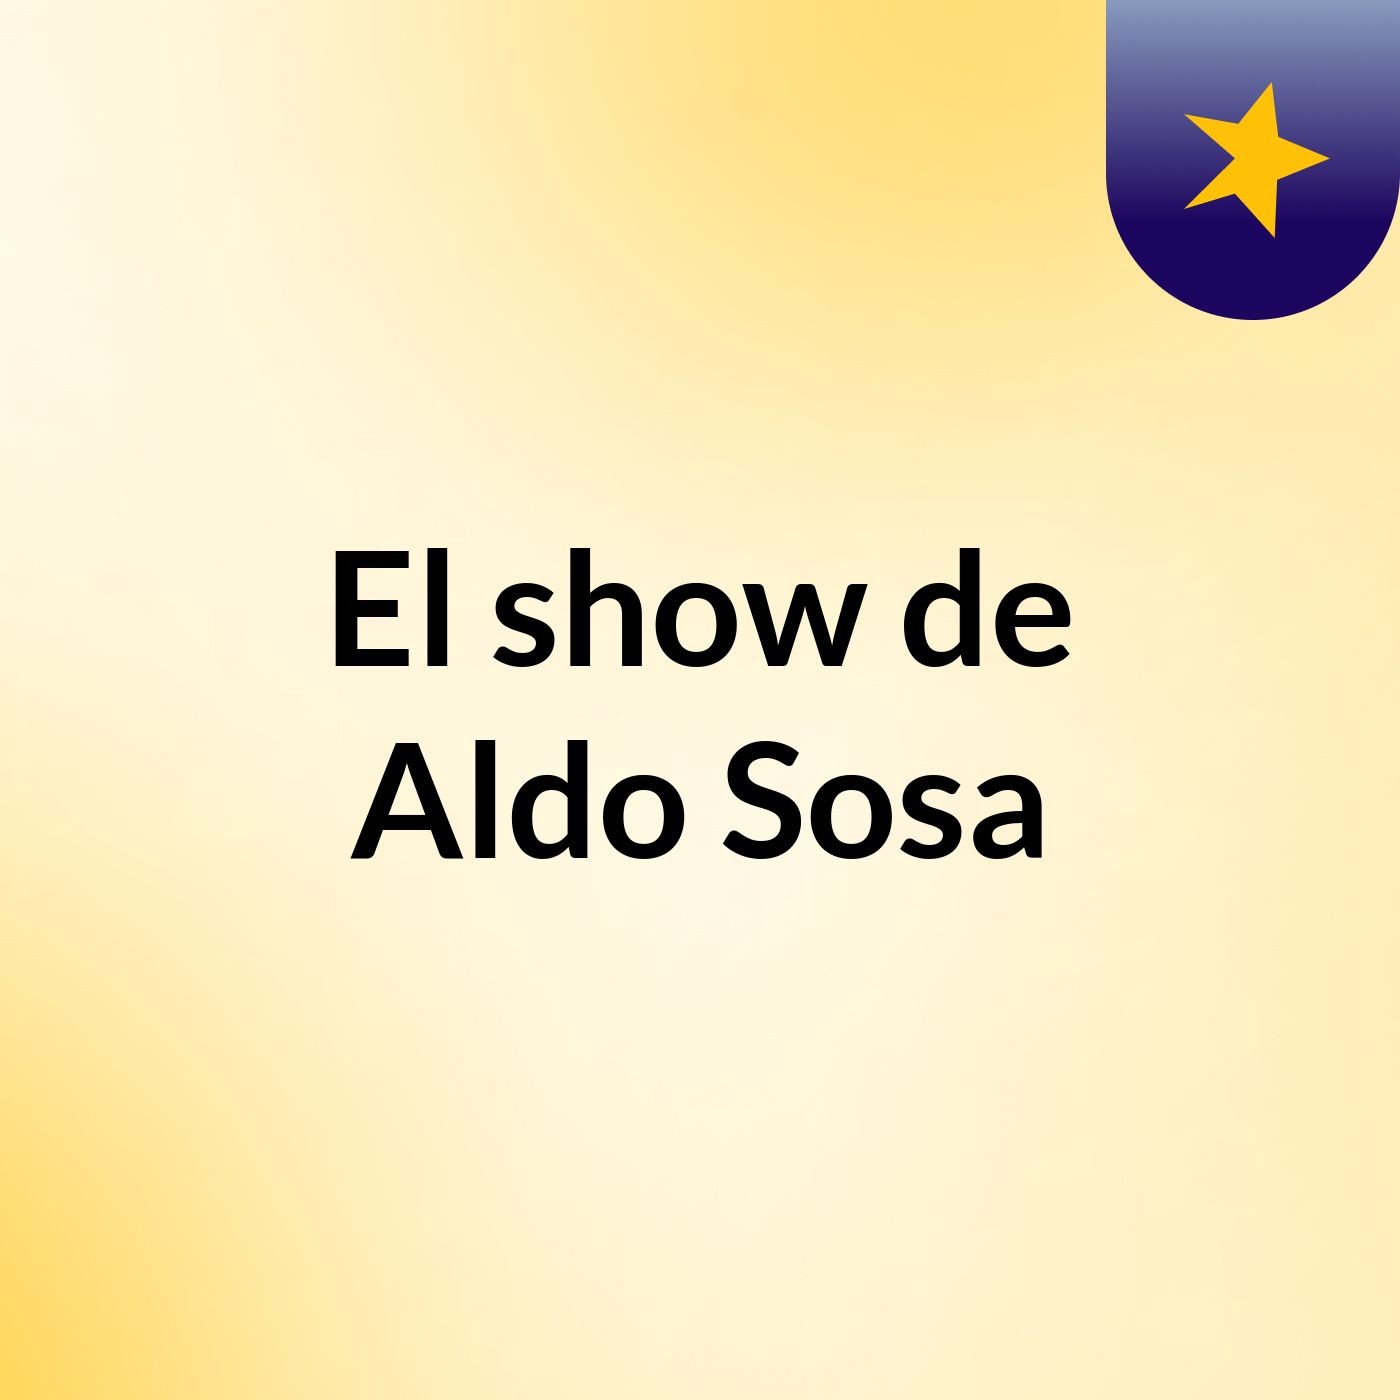 Episodio 2 - El show de Aldo Sosa